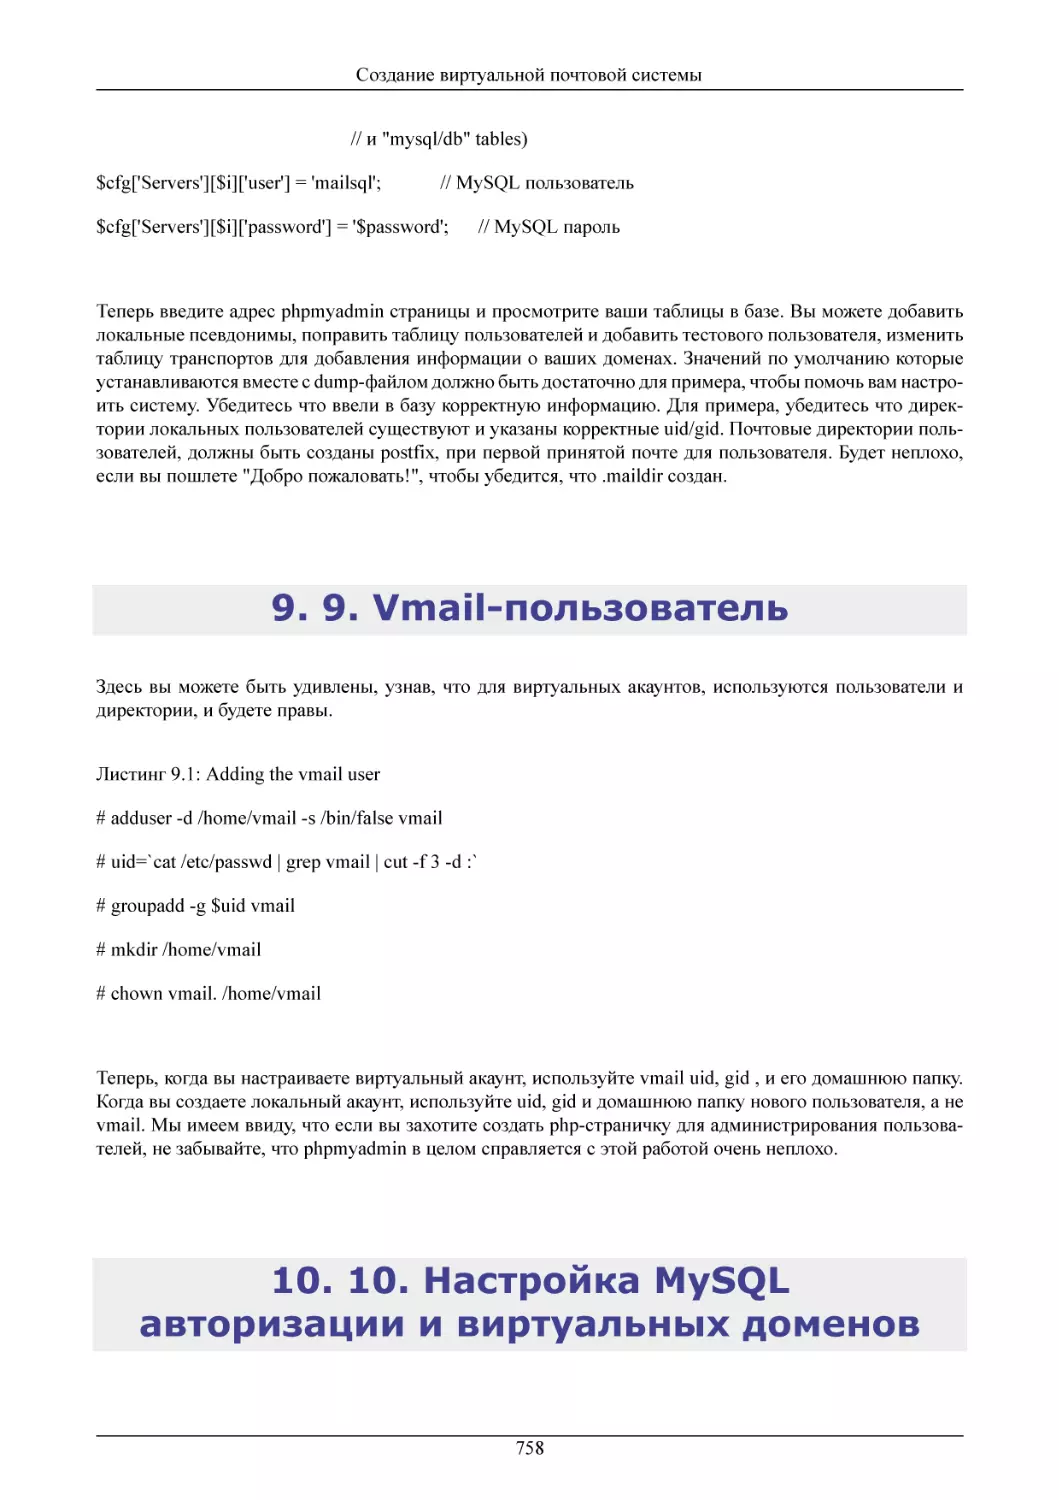 9. Vmail-пользователь
10. Настройка MySQL авторизации и виртуальных доменов